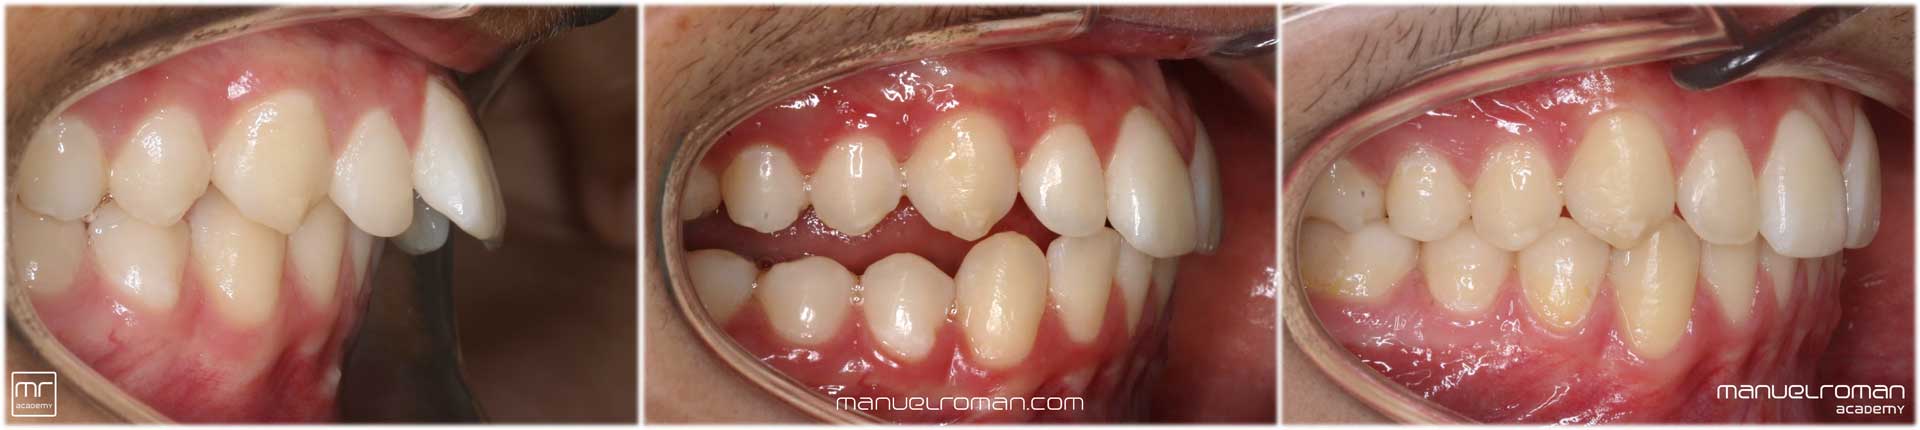 Clase II ortodoncia avance mandibular